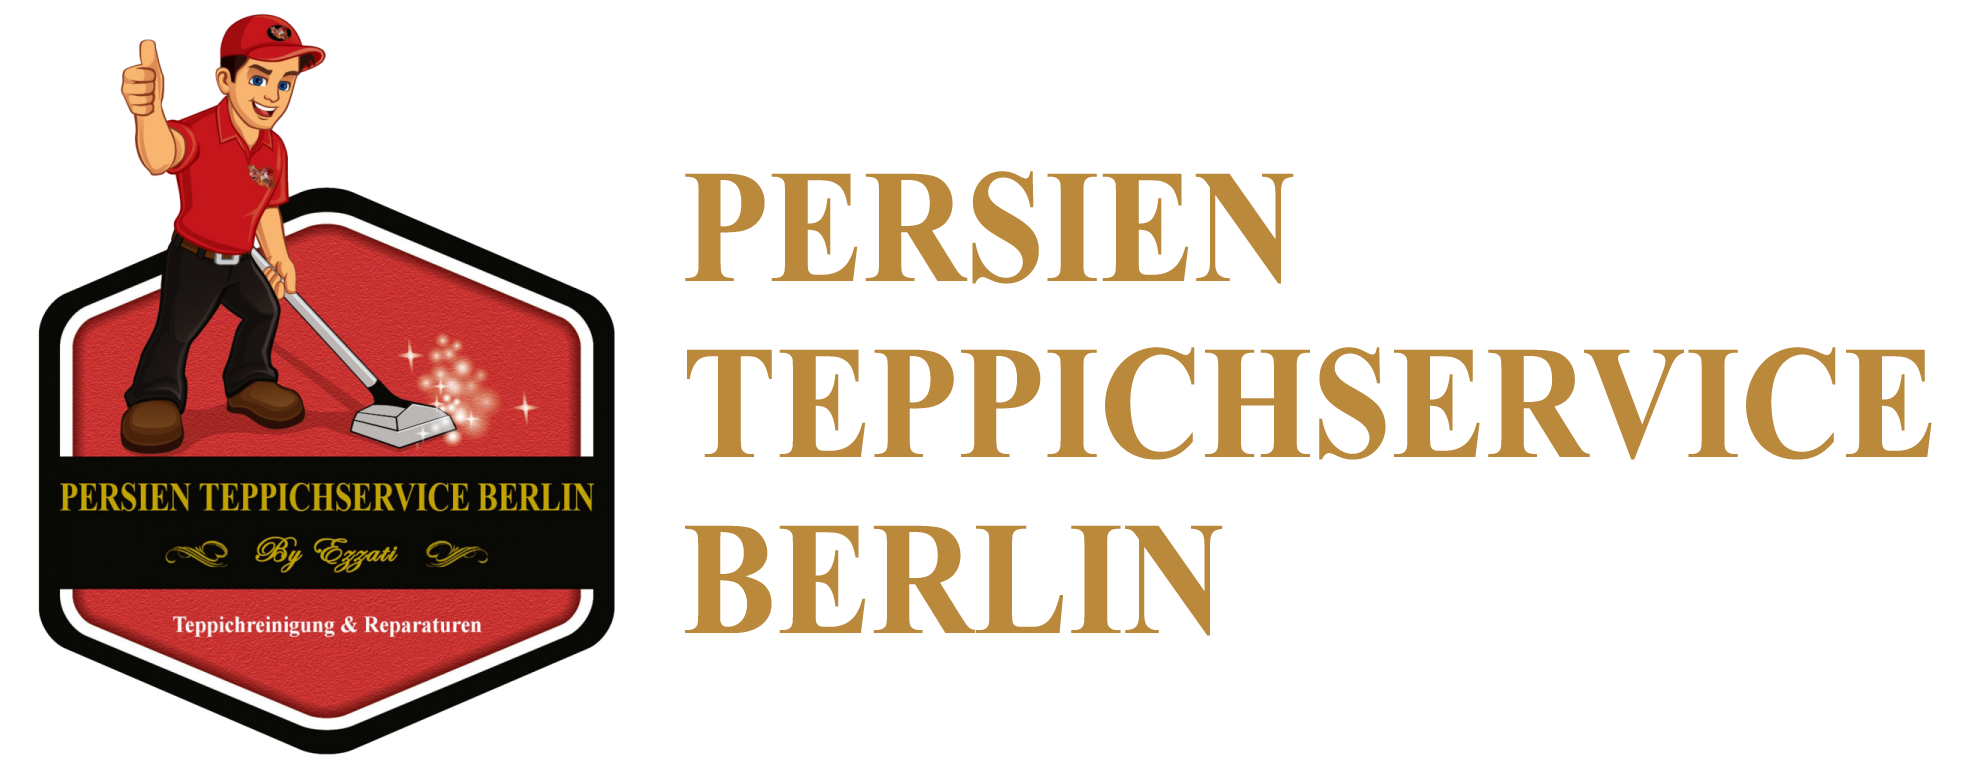 Teppichreinigung Berlin Persien